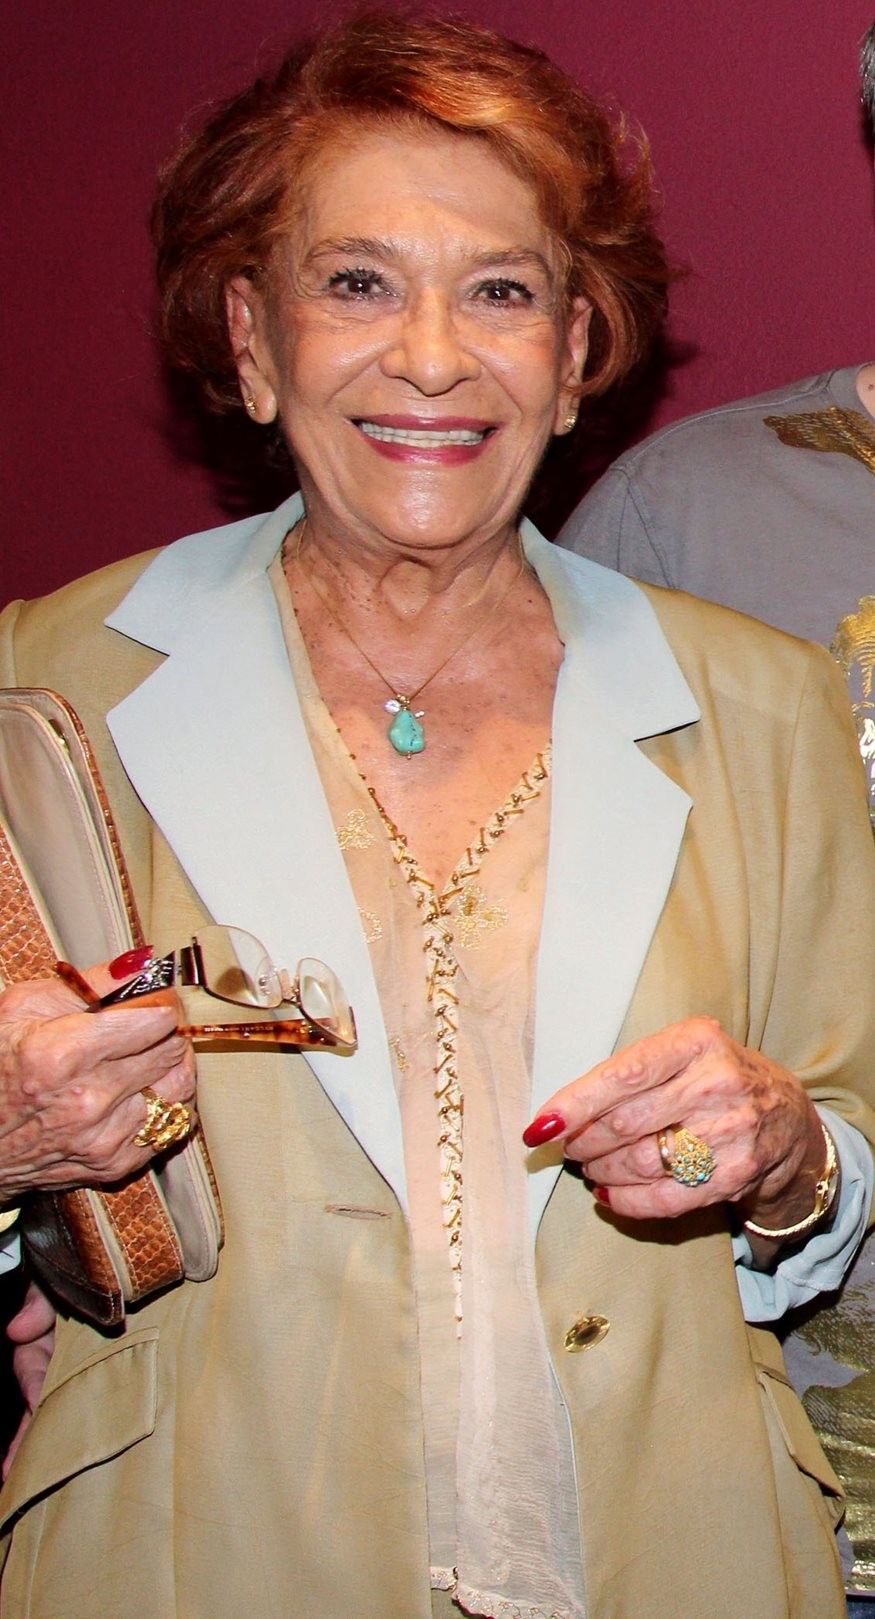 Έφυγε από την ζωή η ηθοποιός Σούλη Σαμπάχ σε ηλικία 91 ετών !